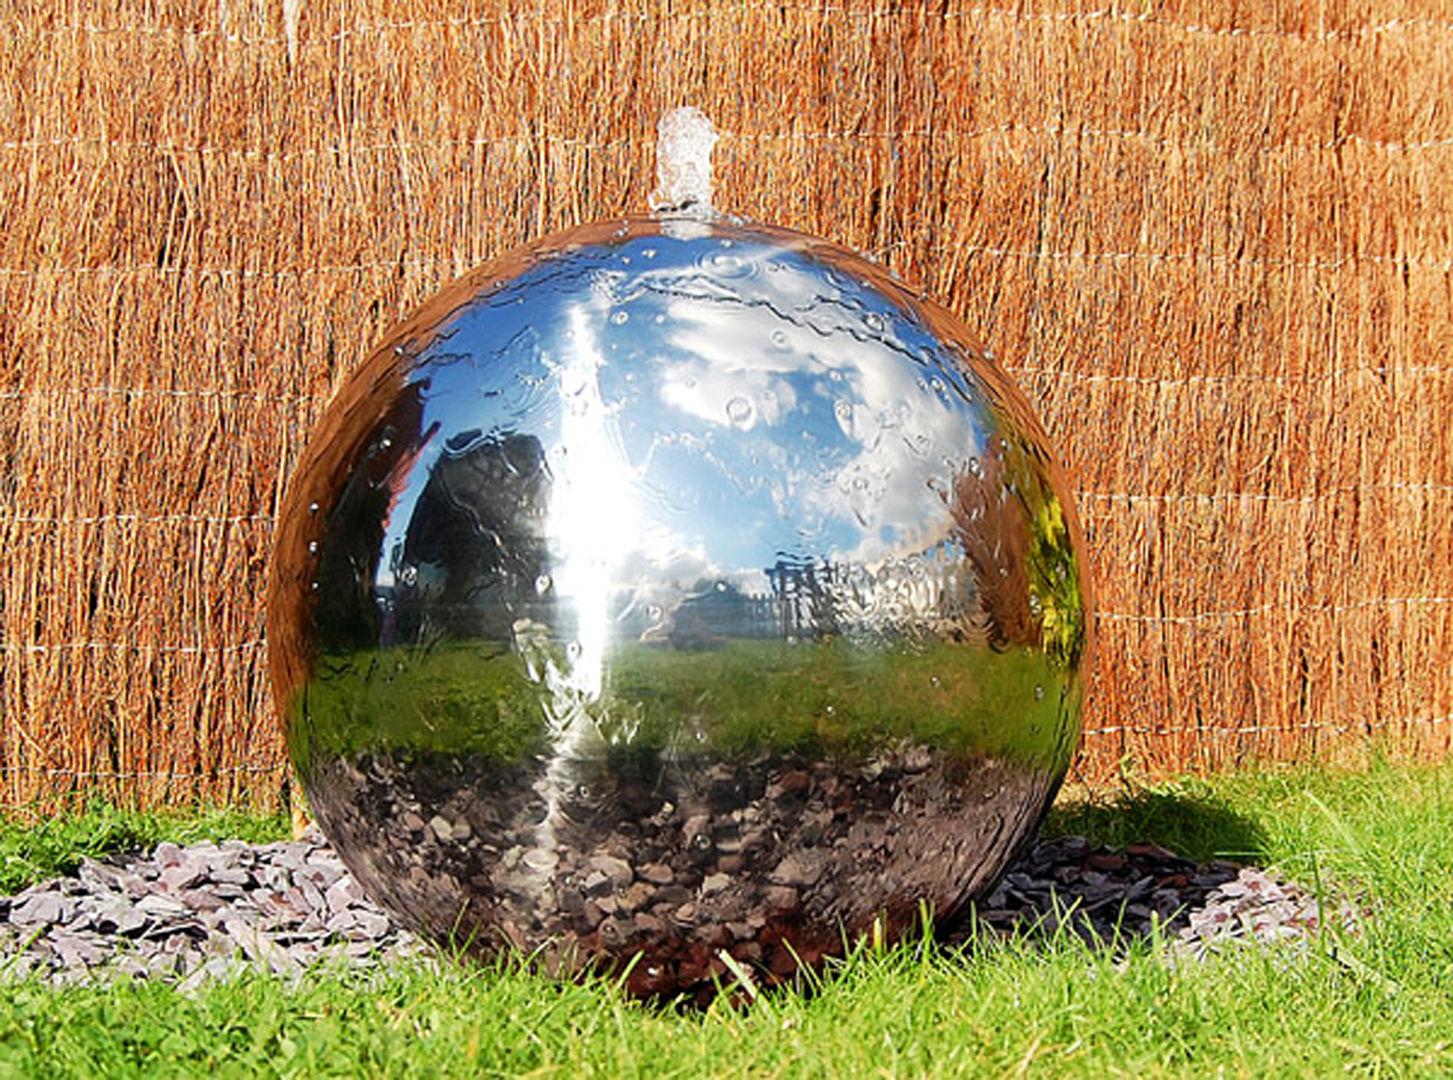 Polished 28cm Stainless Steel Sphere Water Feature Primrose Moderner Garten Accessoires und Dekoration